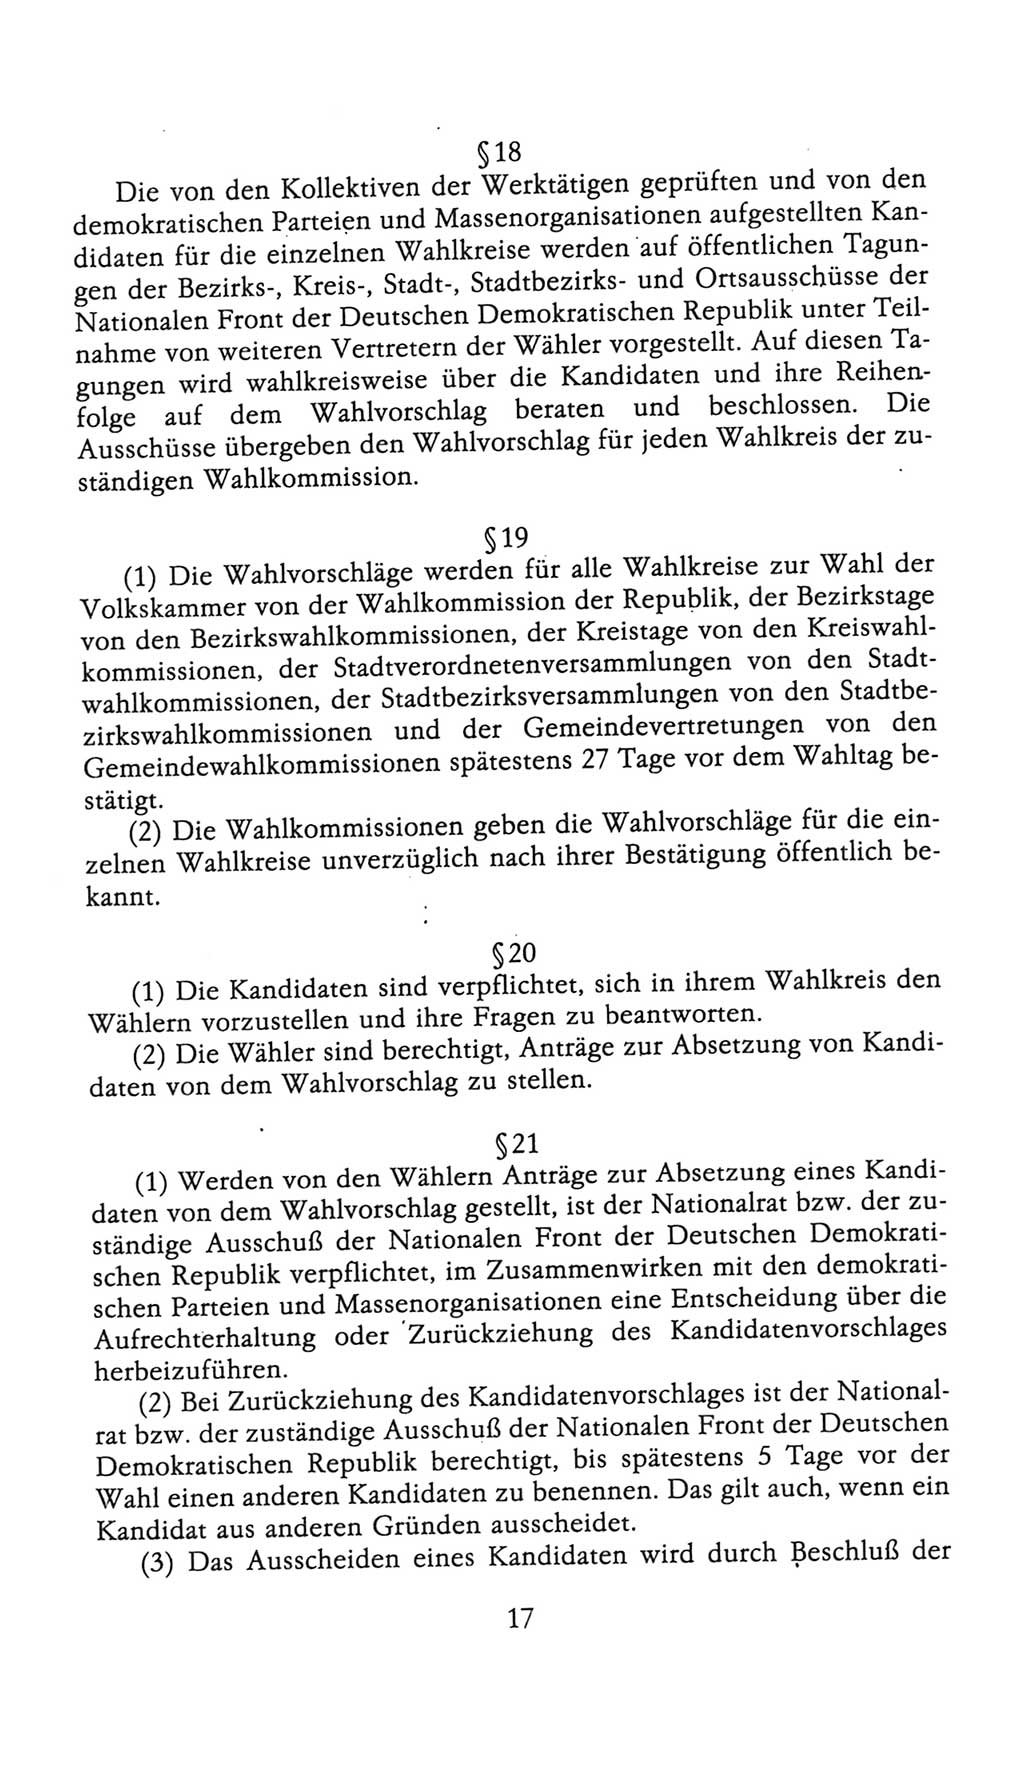 Volkskammer (VK) der Deutschen Demokratischen Republik (DDR), 9. Wahlperiode 1986-1990, Seite 17 (VK. DDR 9. WP. 1986-1990, S. 17)